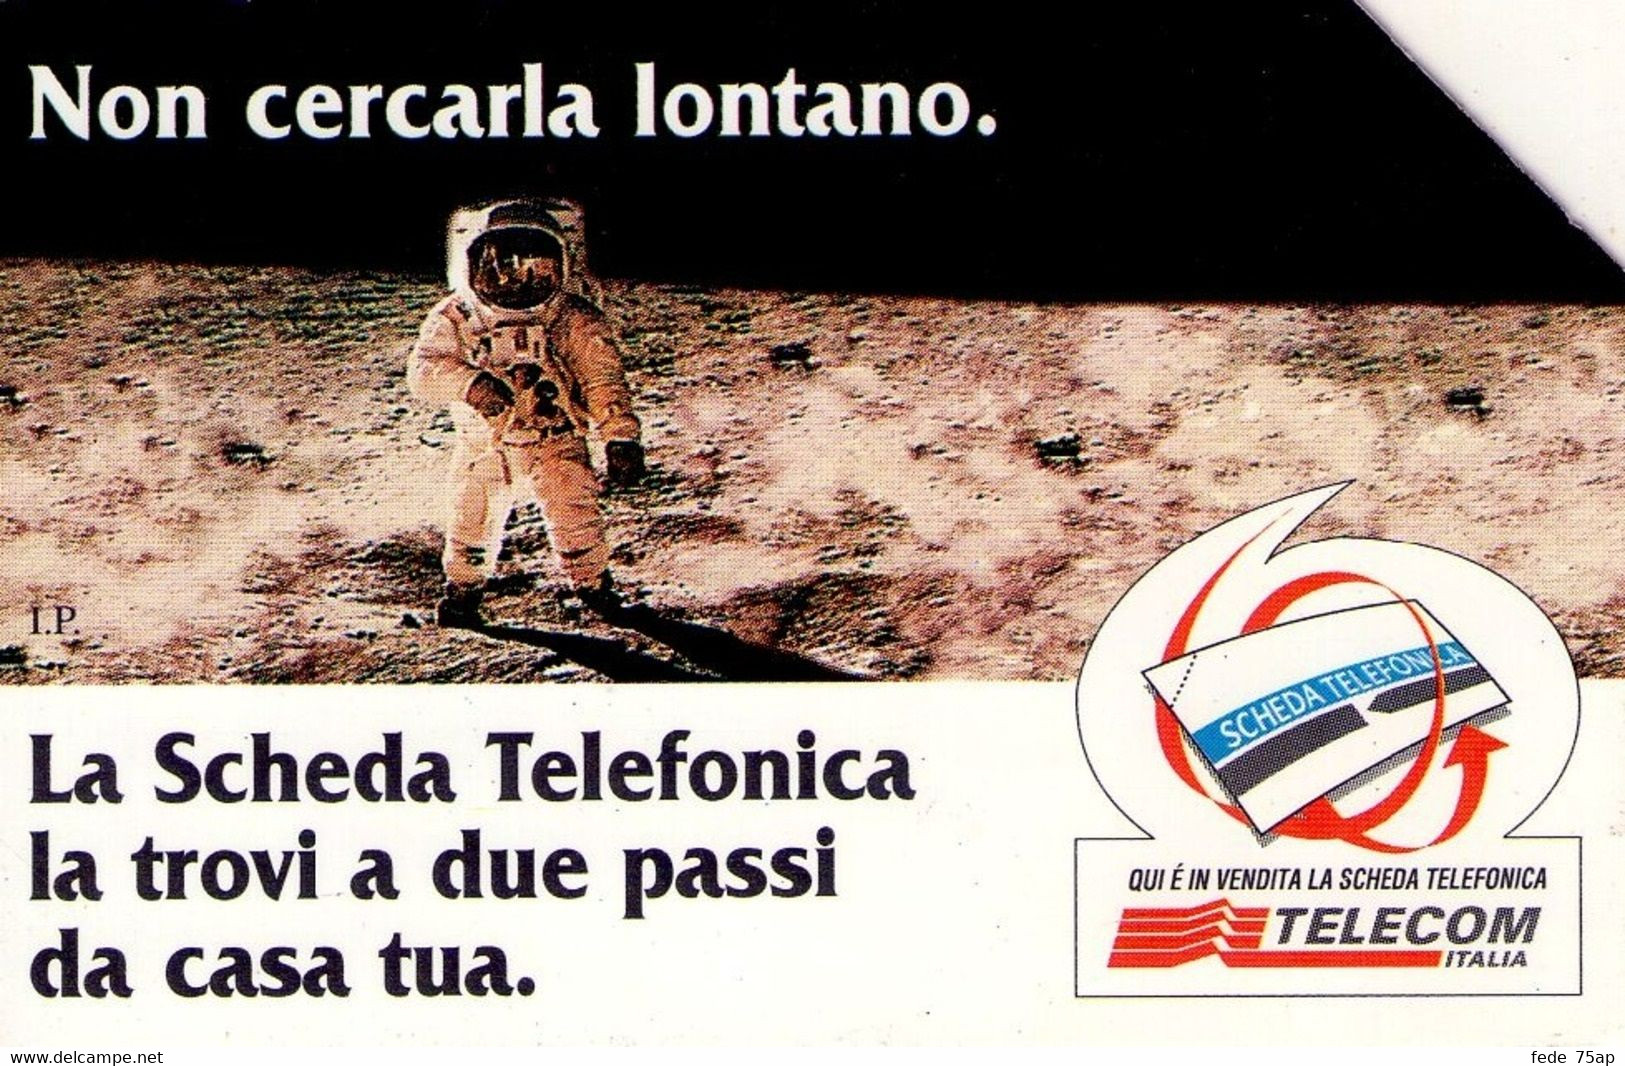 Scheda Telefonica TELECOM ITALIA "NON CERCARLA LONTANO - LUNA" - Catalogo Golden Lira Nr. 592, Usata - SPAZIO - Space